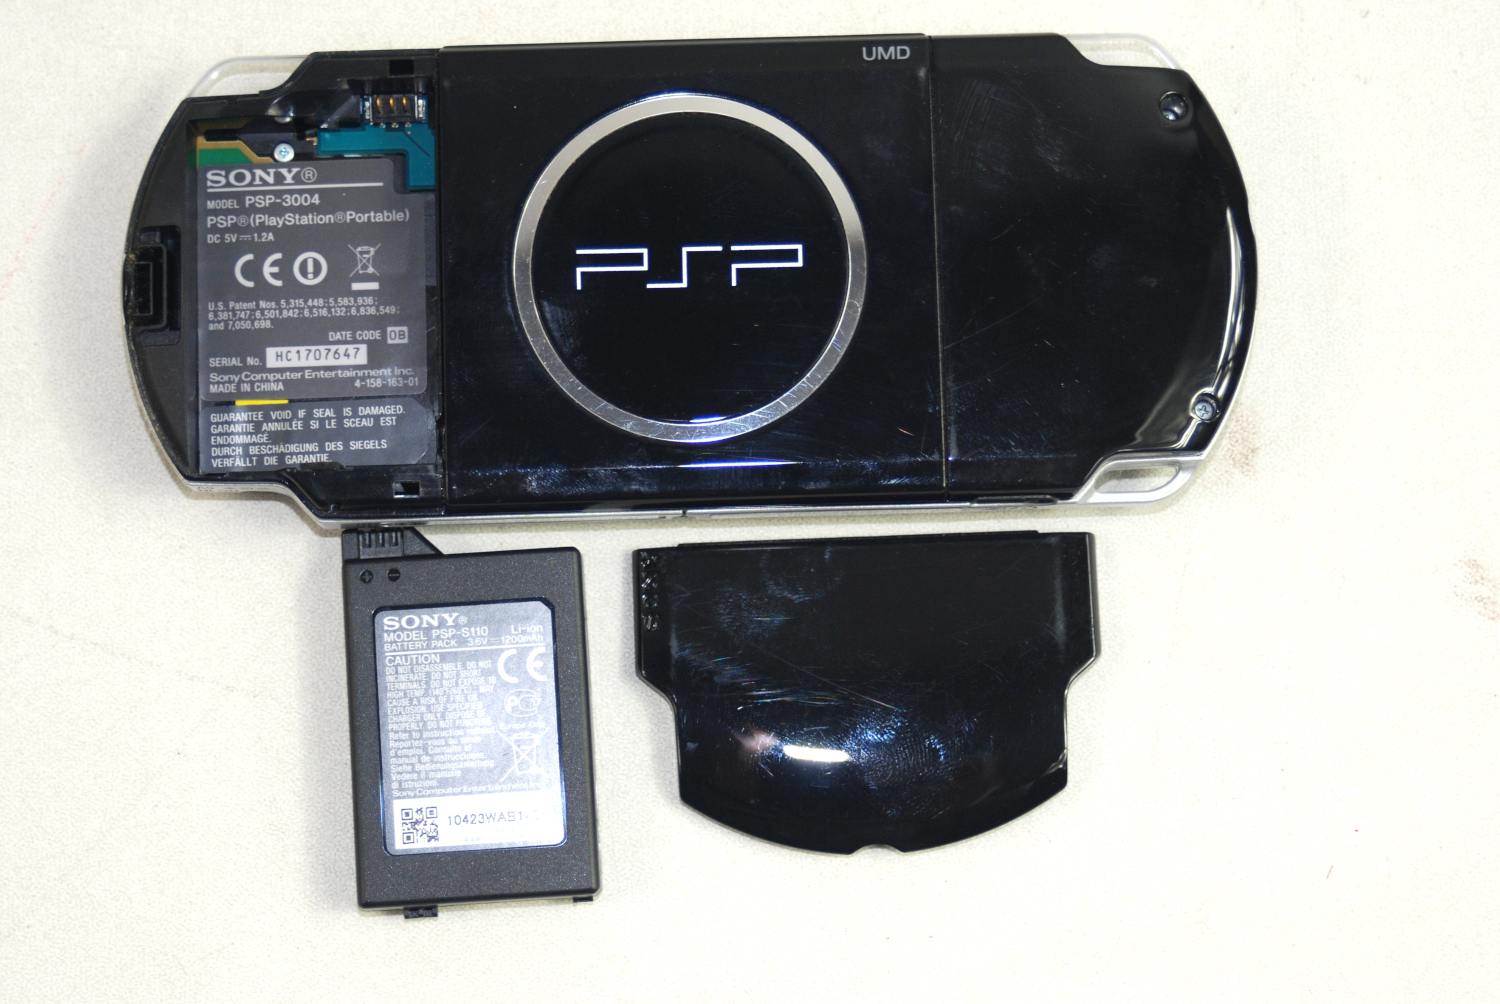 Playstation Portal : la console portable de Sony vaut-elle le coup ?